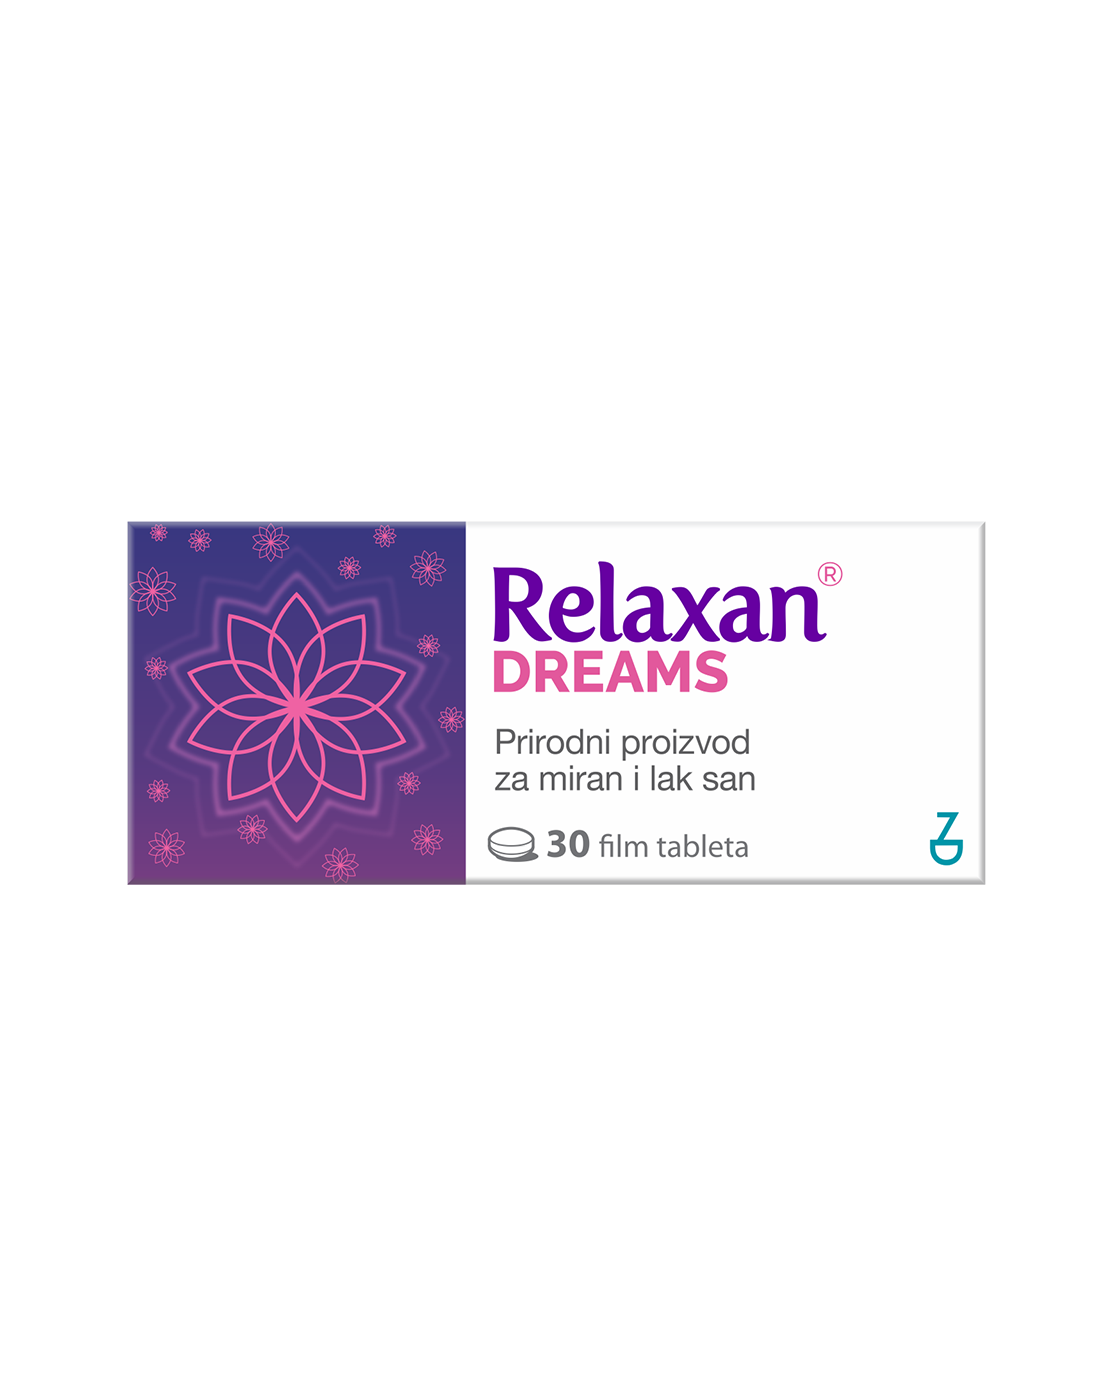 Relaxan dreams